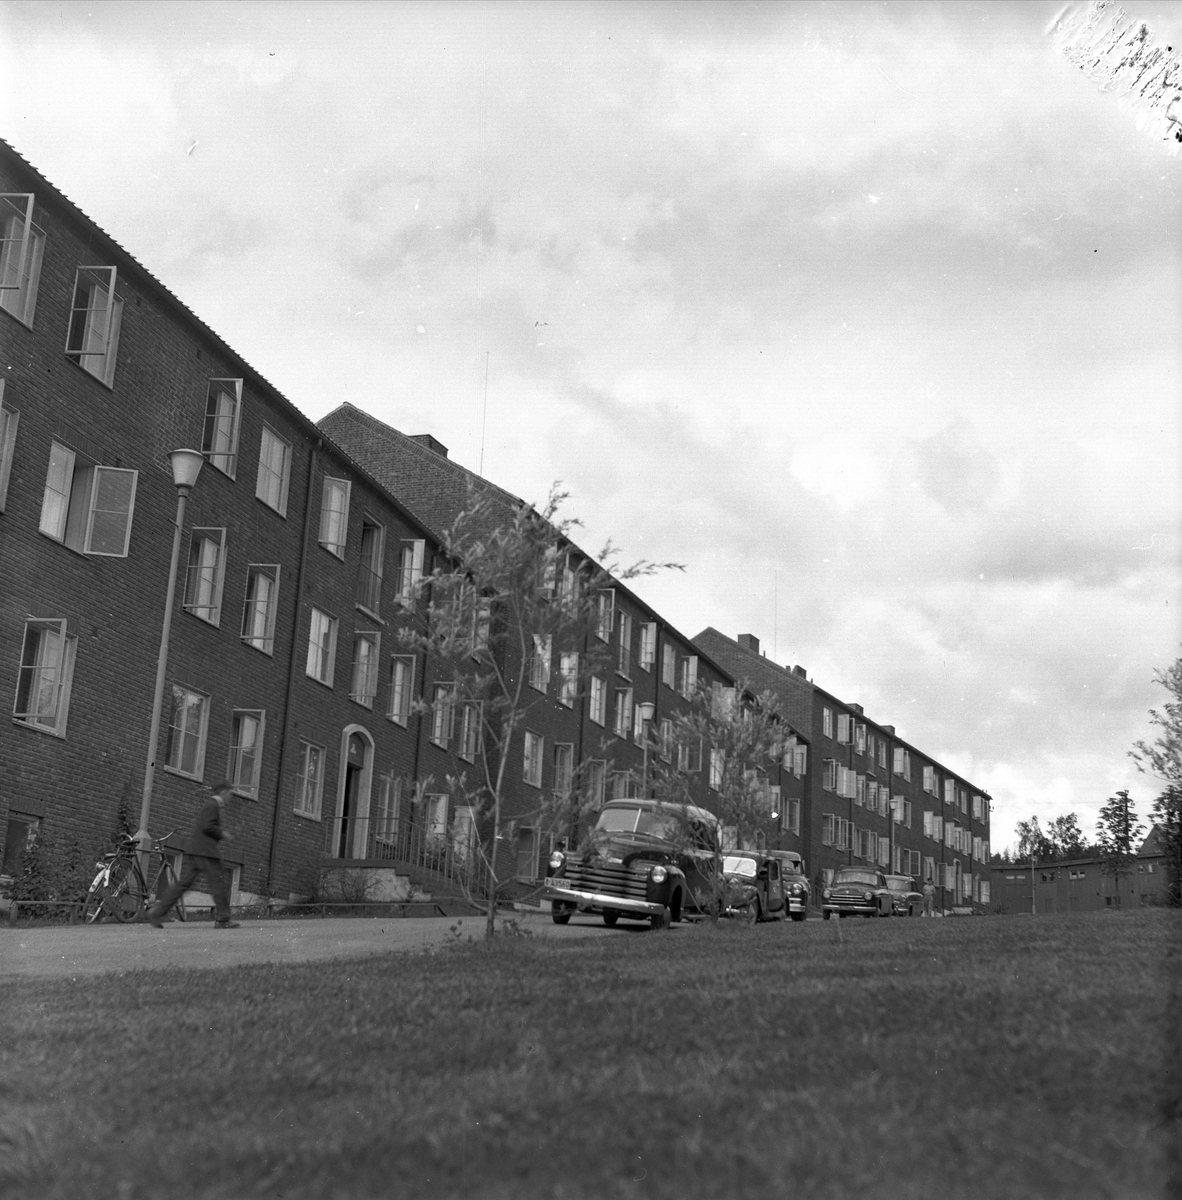 Sogn studentby, Oslo, 22.08.1954. Bygninger og biler.